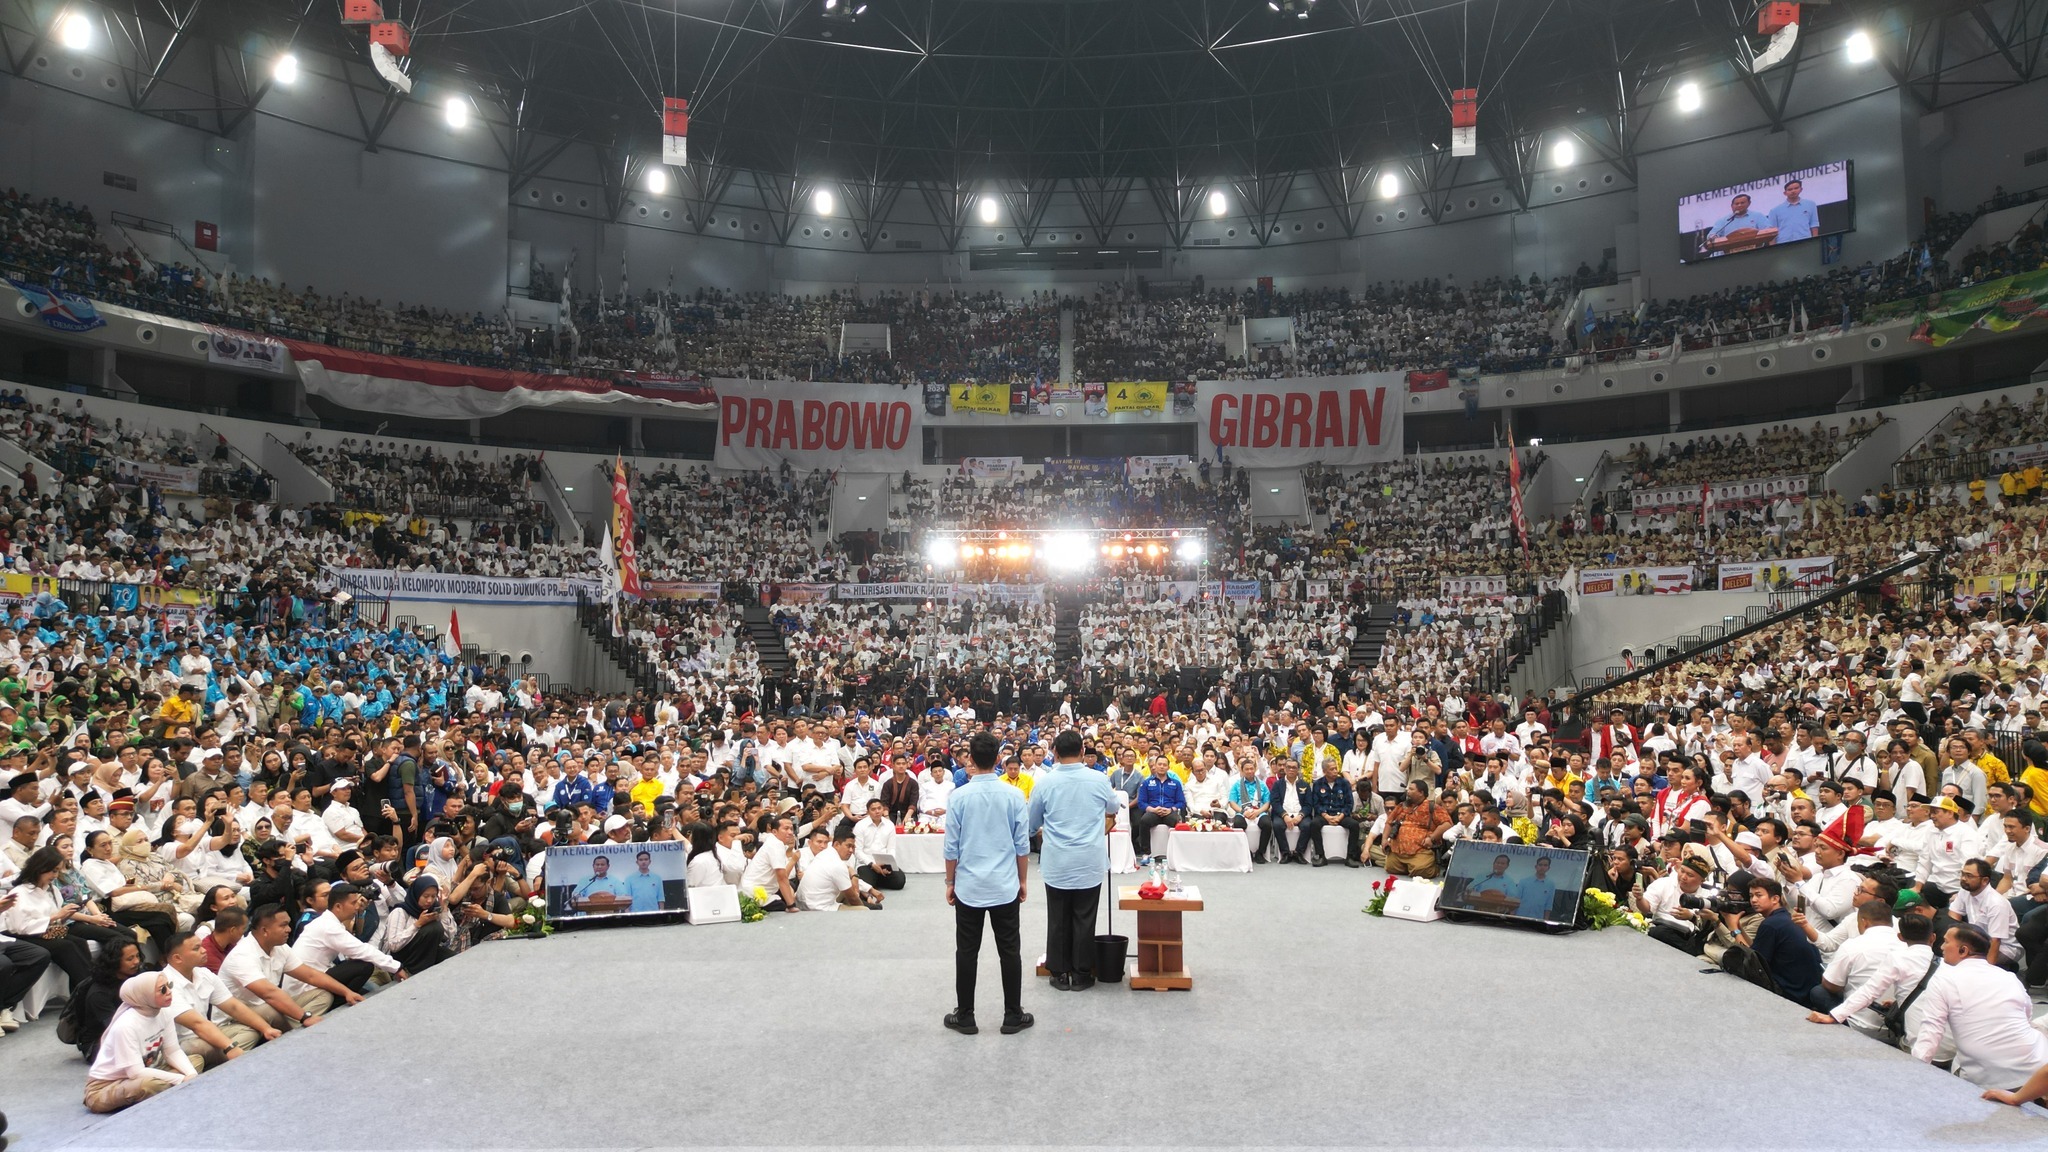 Mewujudkan Indonesia Emas 2045 bersama Prabowo-Gibran